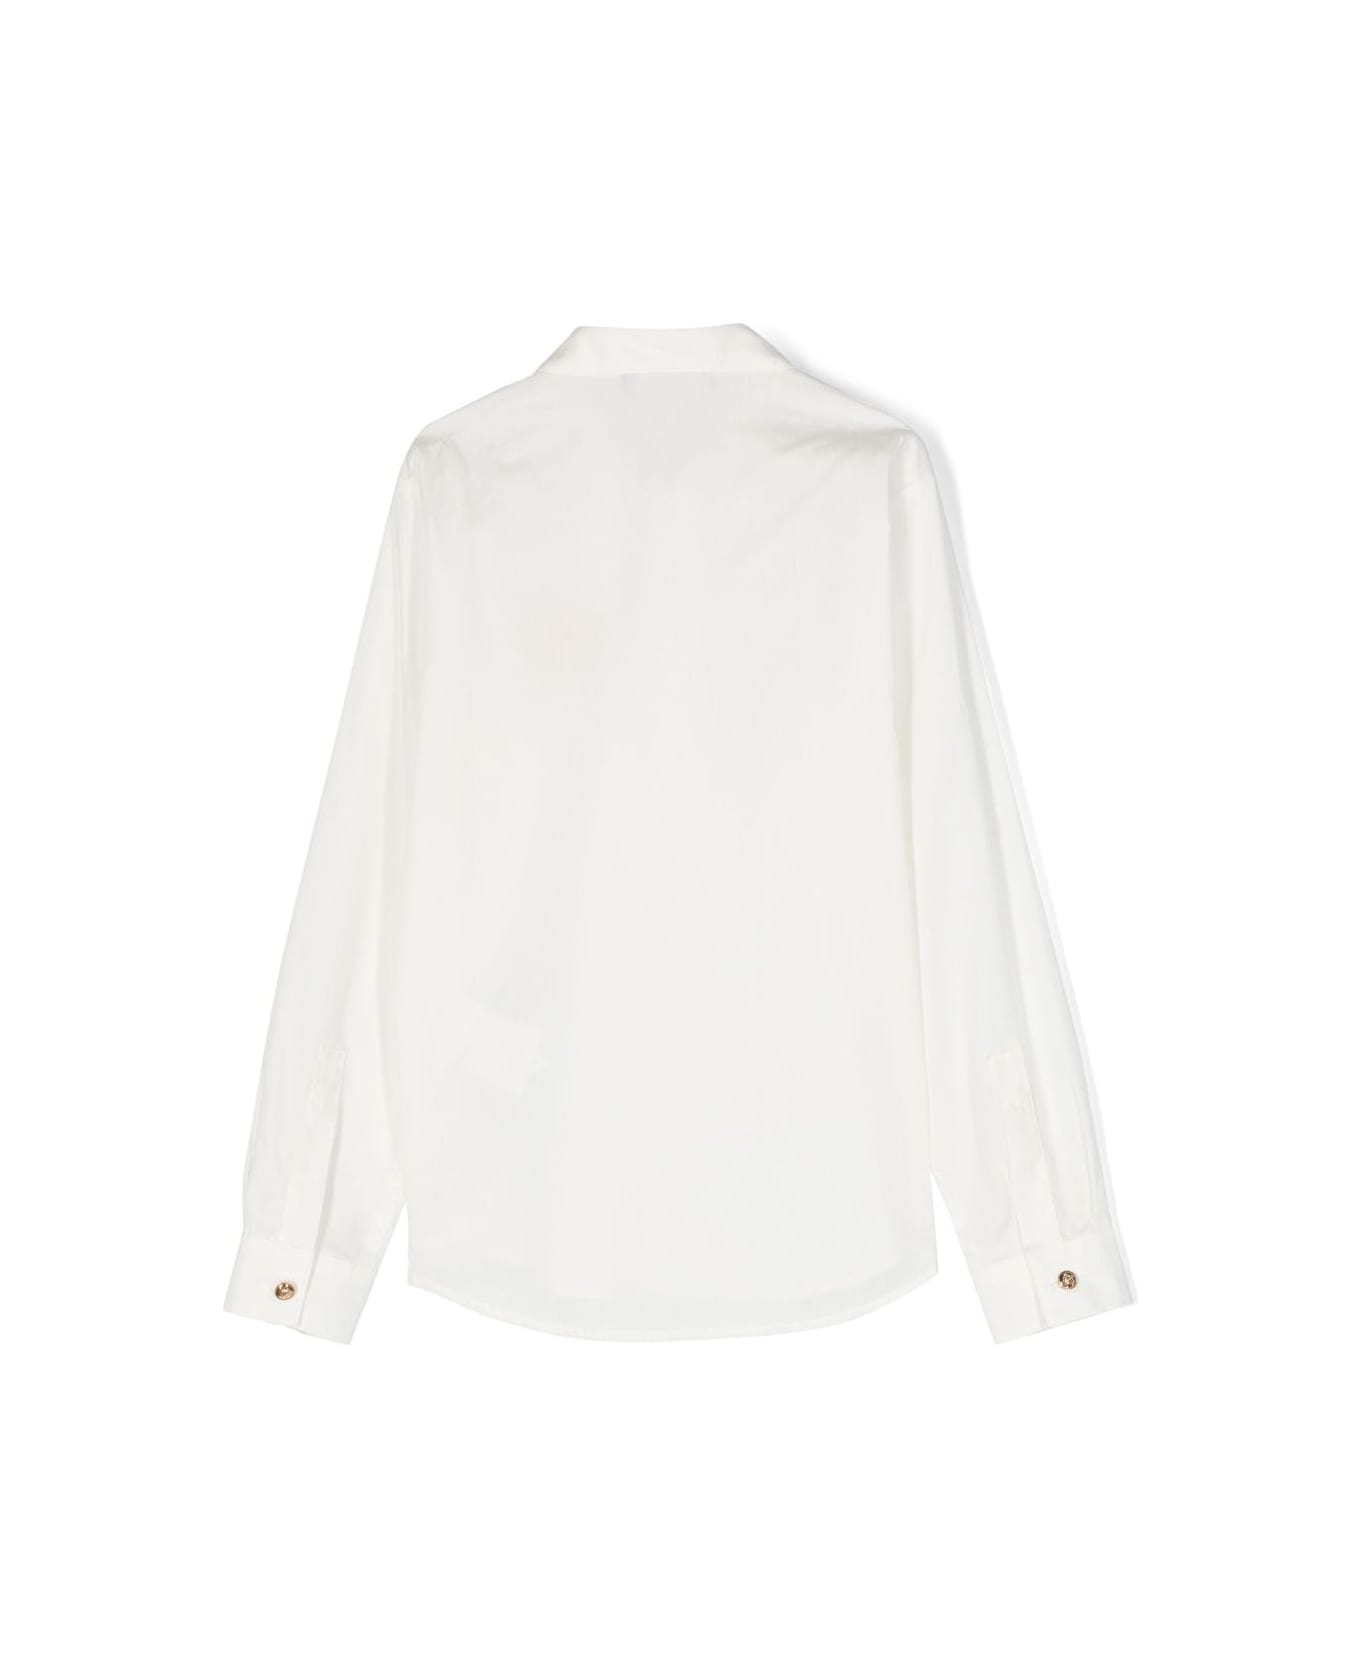 Versace Camicia Bianca In Popeline Di Cotone Bambino - Bianco